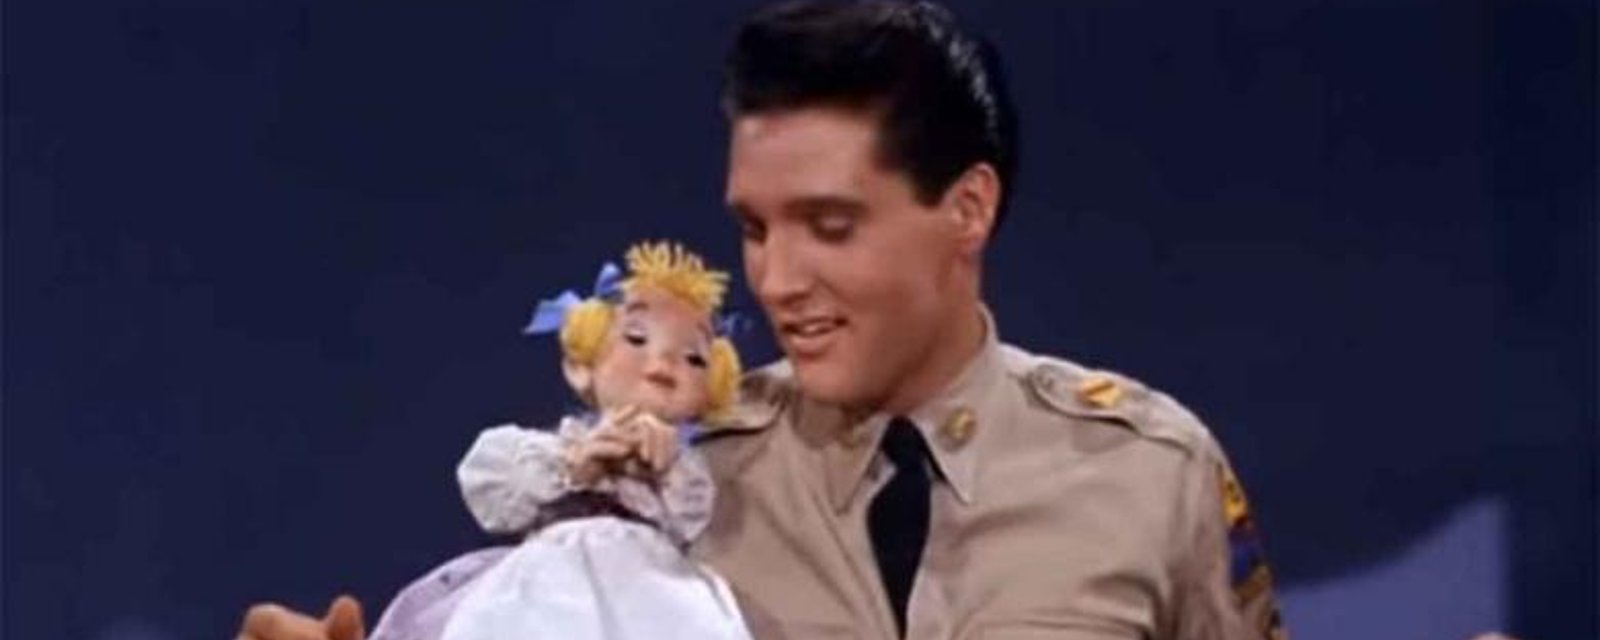 Une vieille vidéo d'Elvis refait surface et prouve ses talents de charmeur inégalés!